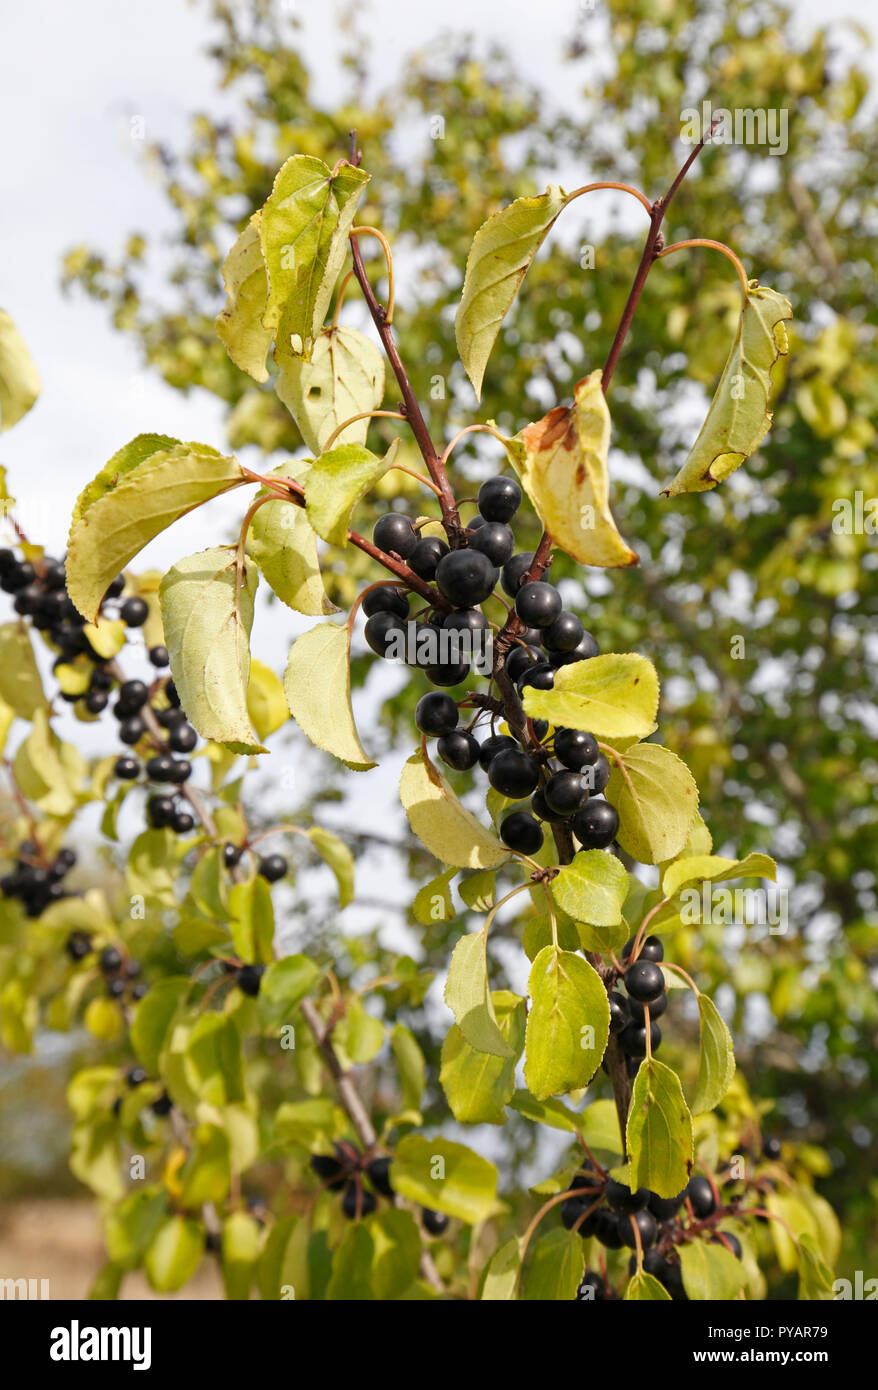 Löschen von Sanddorn, Sanddorn, Sanddorn. Wissenschaftlicher Name: Rhamnus cathartica Familie: Rhamnaceae. Native UK Baum. fruchtkörper im Herbst. Stockfoto